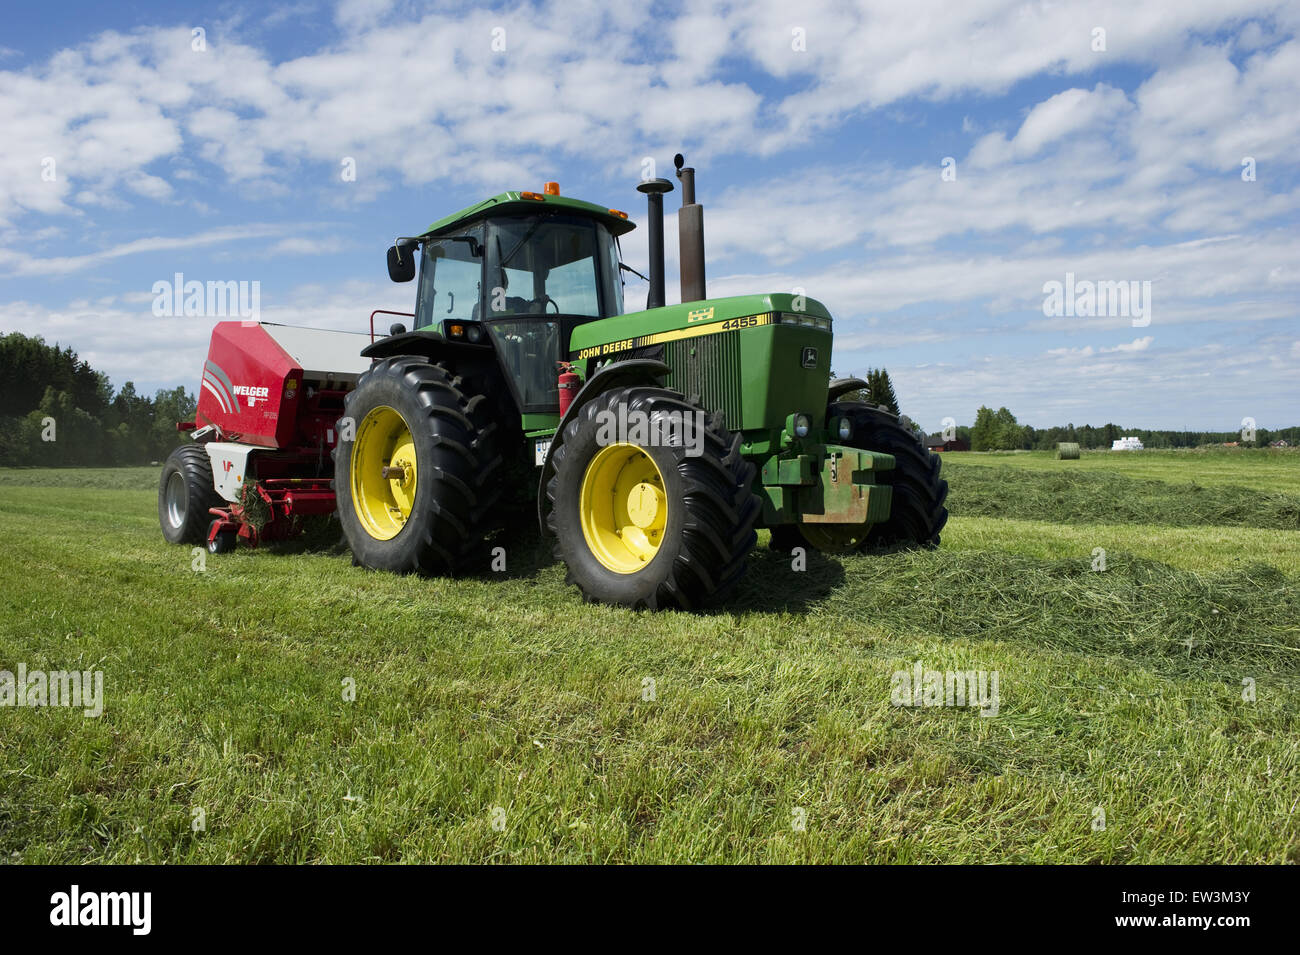 John Deere 4455 tractor and Welger baler, baling silage crop, Sweden, June Stock Photo